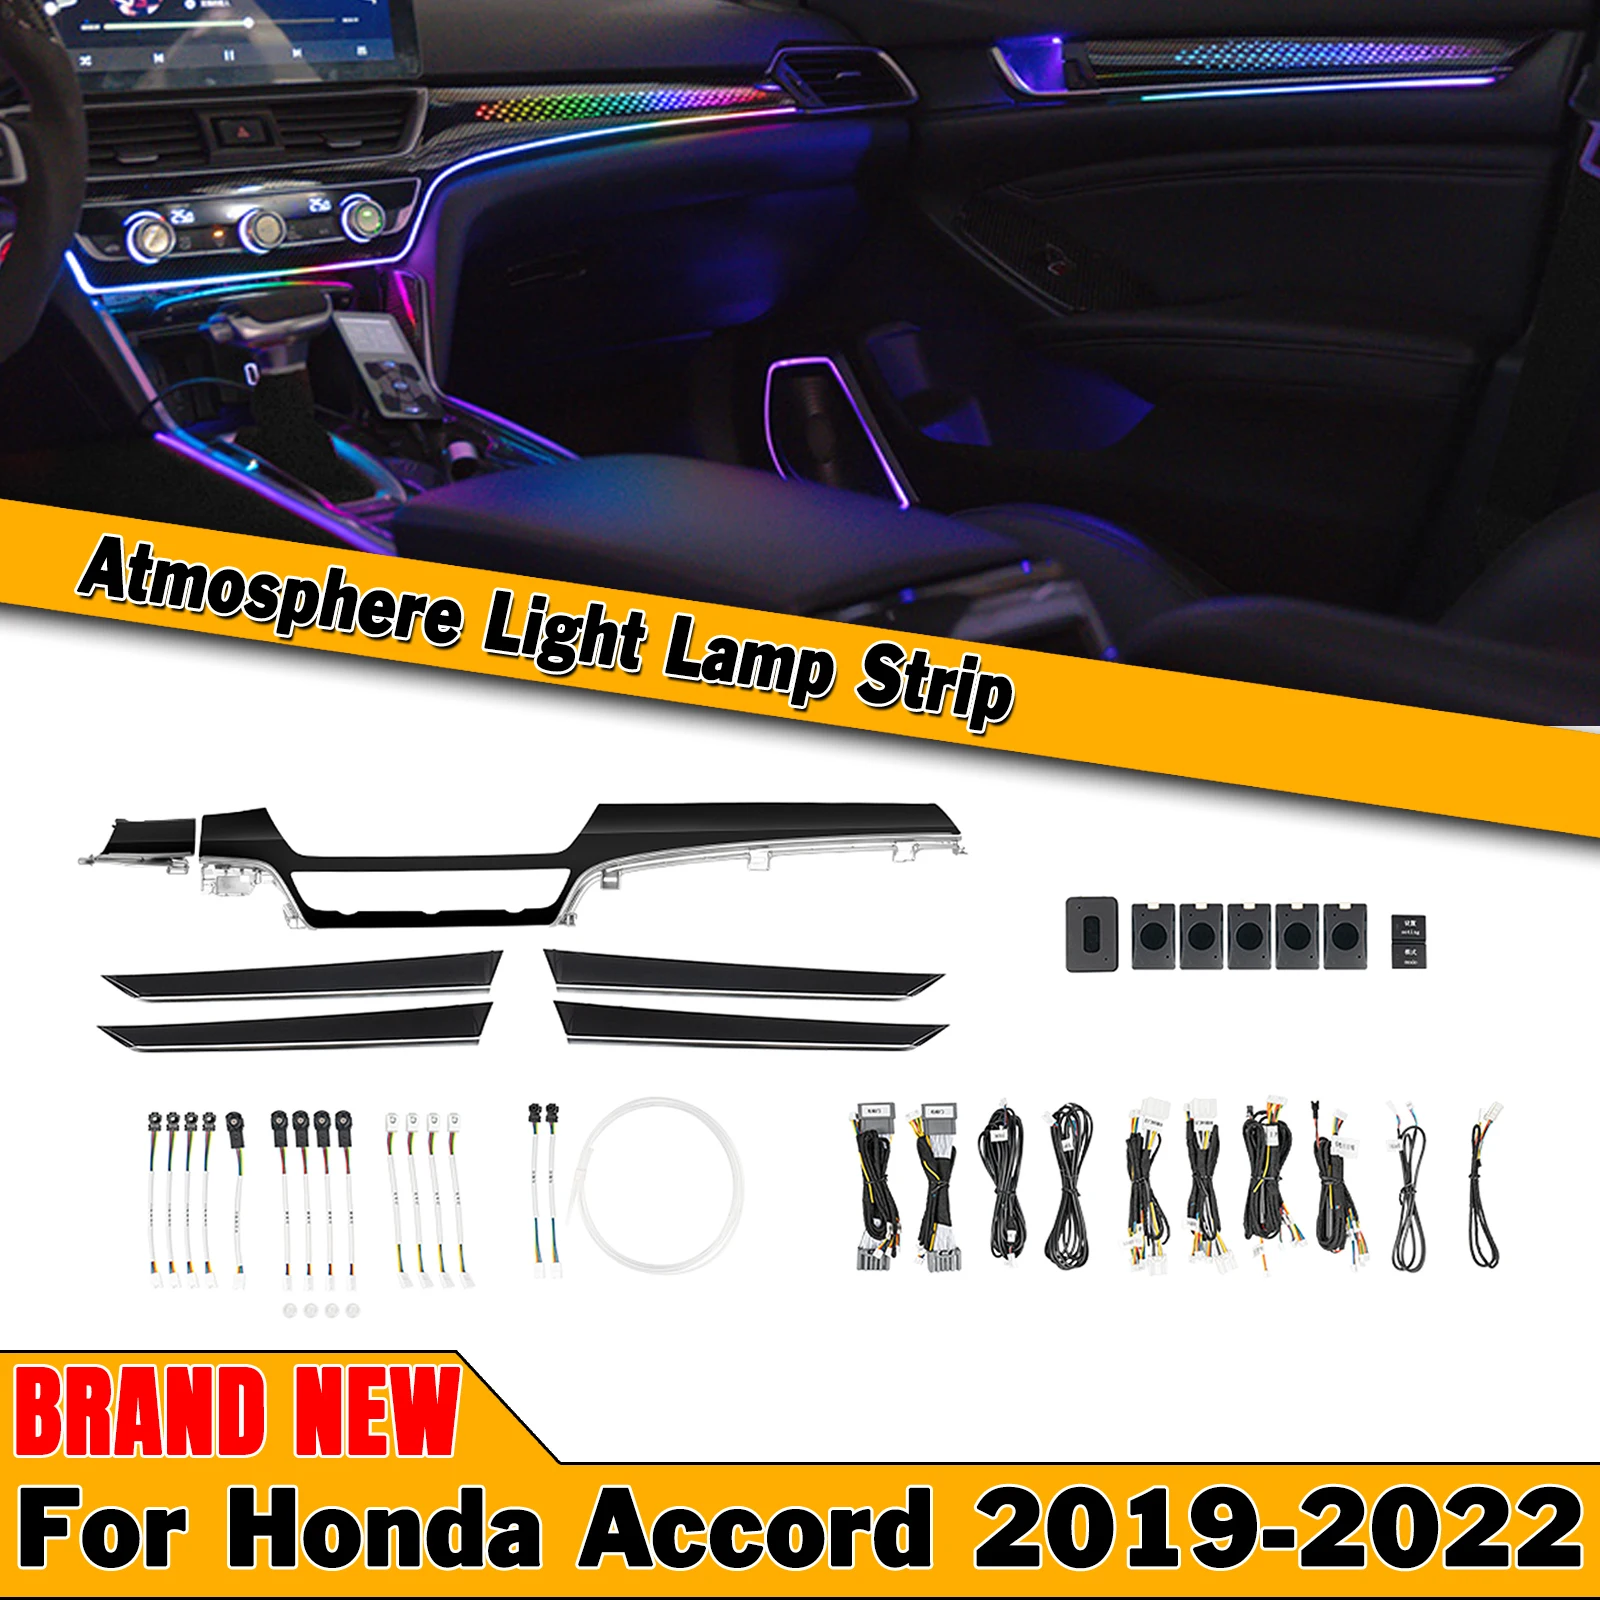 

Для Honda Accord 10.5th 2019-2022 Автомобильная внутренняя атмосфера светильник набор полос разноцветная Лампа Внутреннее настроение декоративная лампа